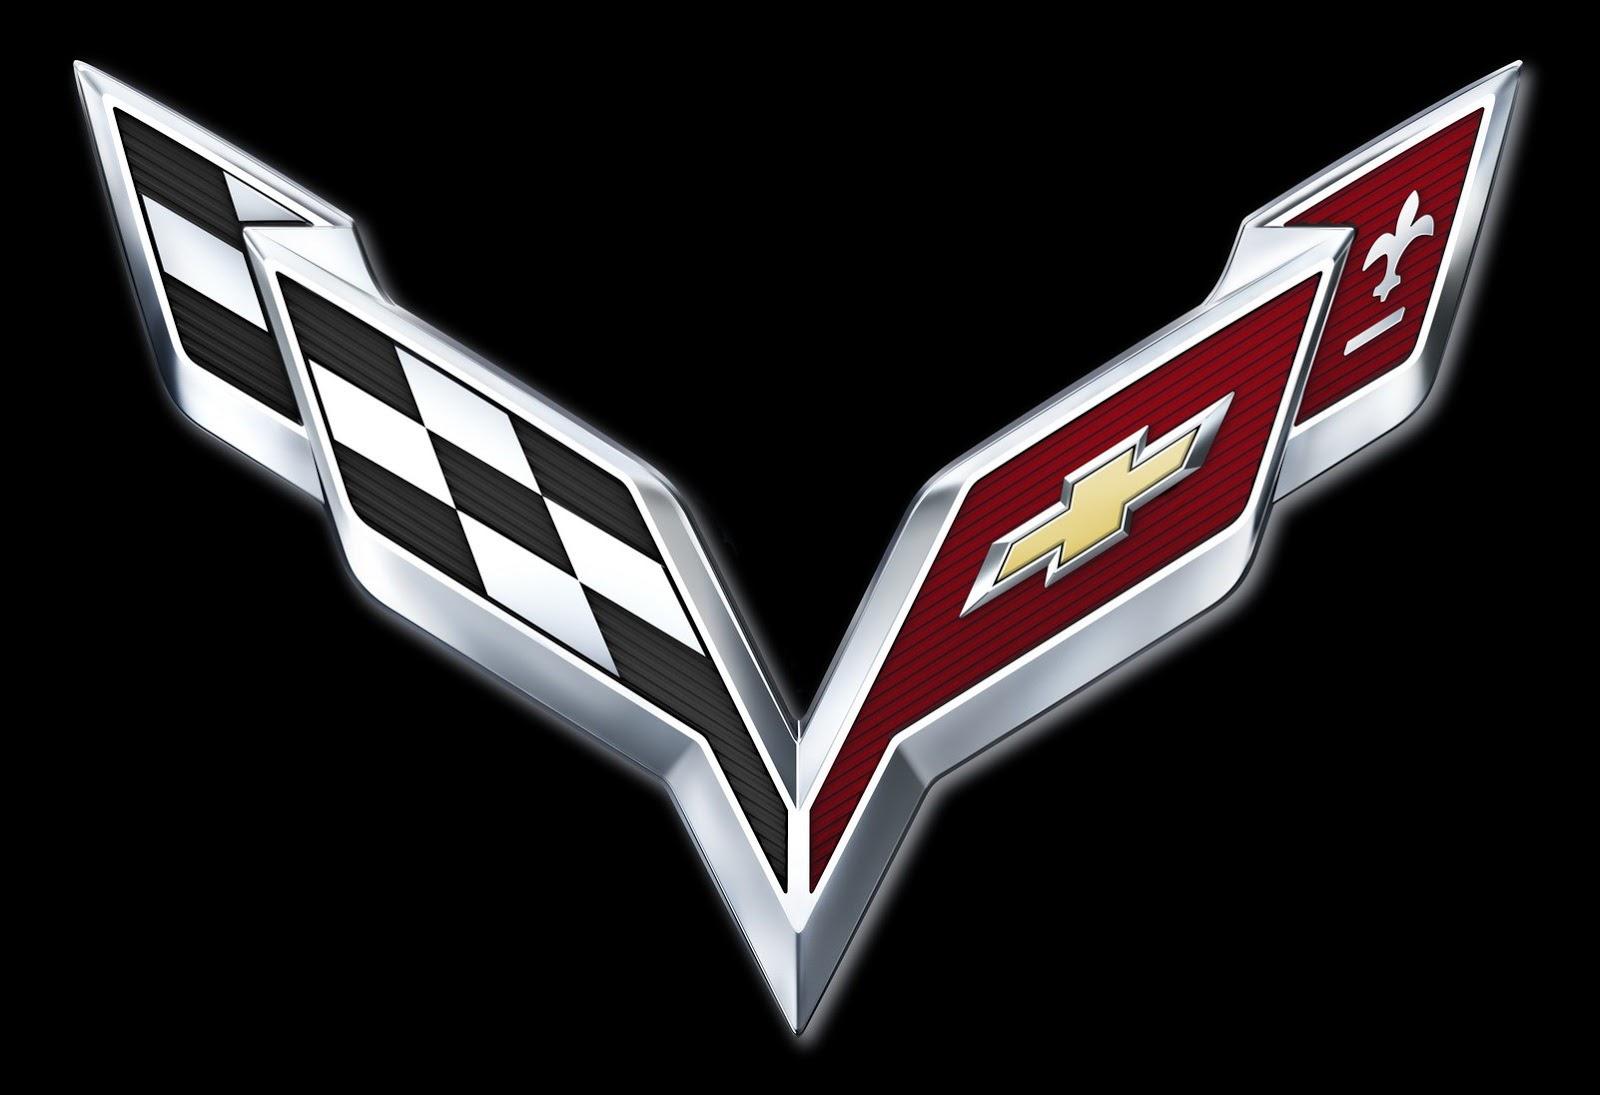 LSX Logo - GM Reveals 2014 Corvette Logo, Confirms C7 Debut Date